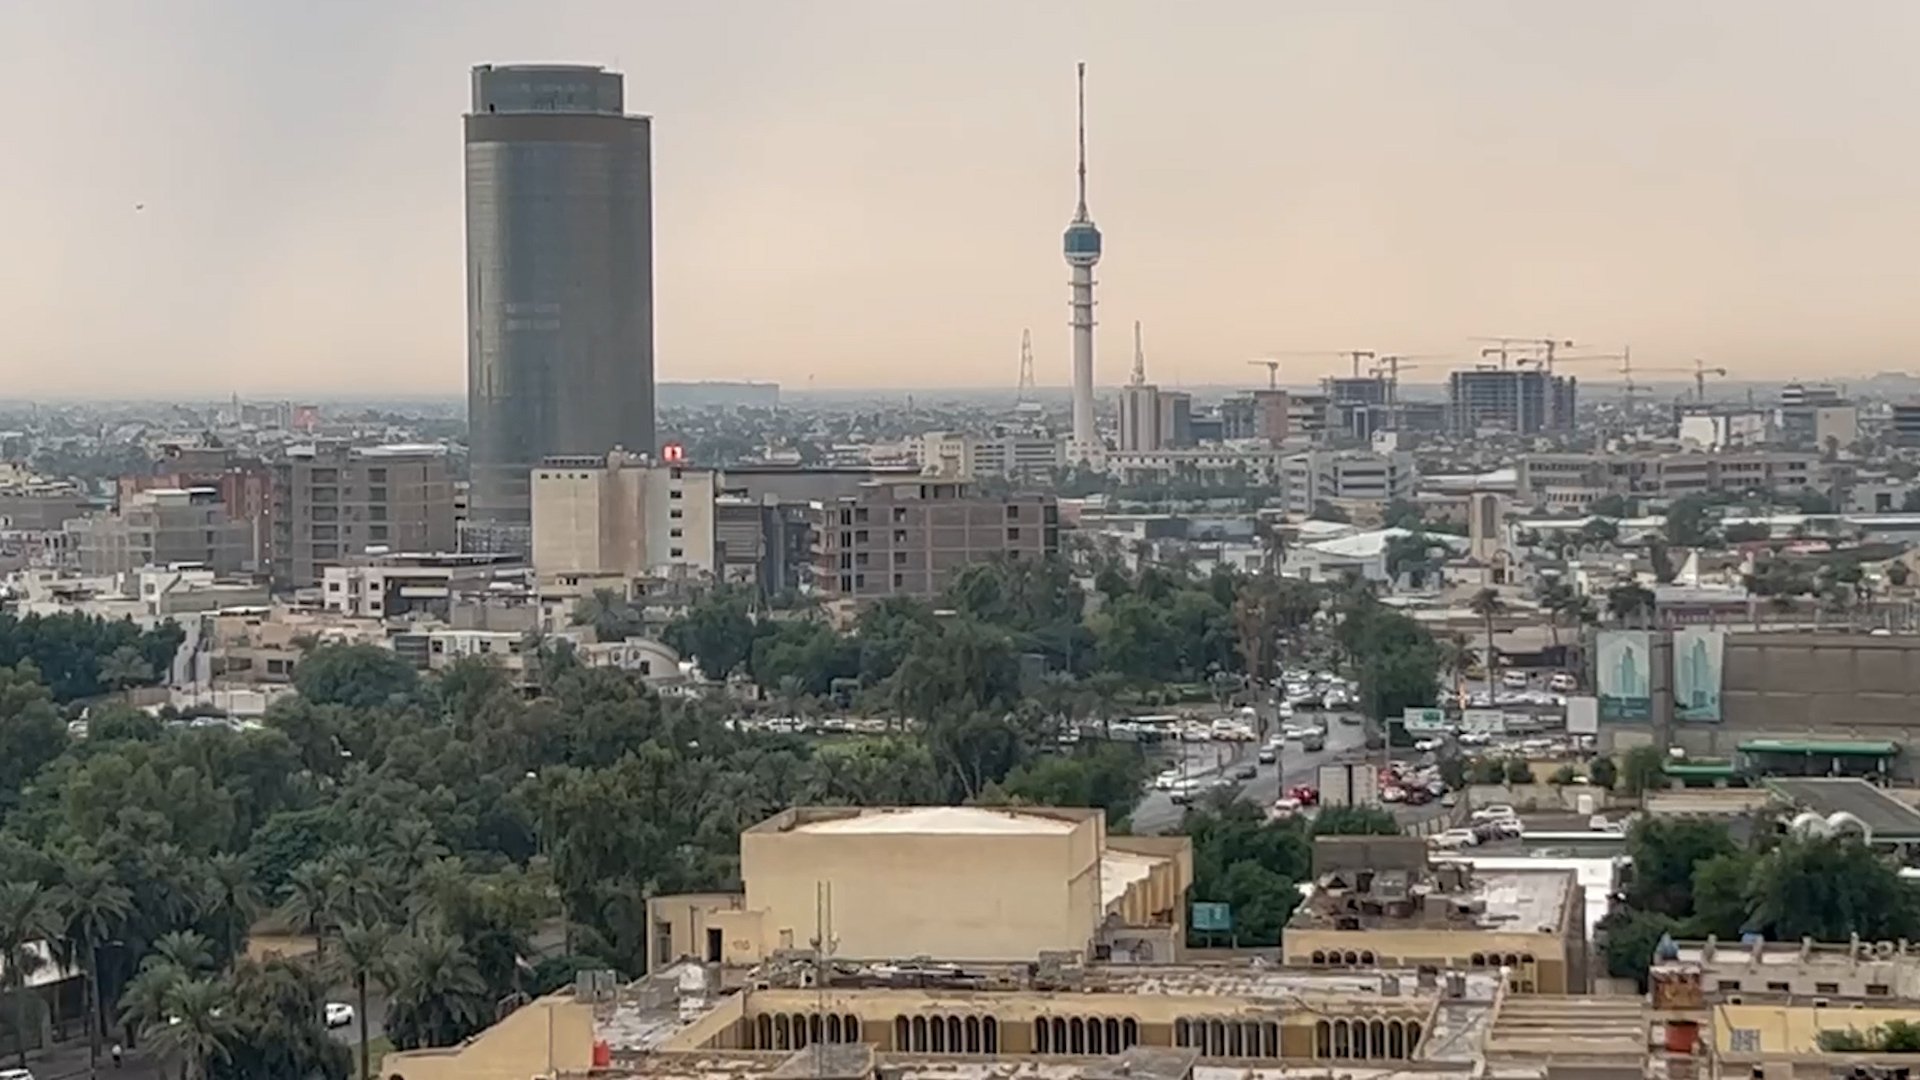 فيديو أول مطرة.. تشرين فتح باب الشتاء في بغداد لكن ما تزال حارة